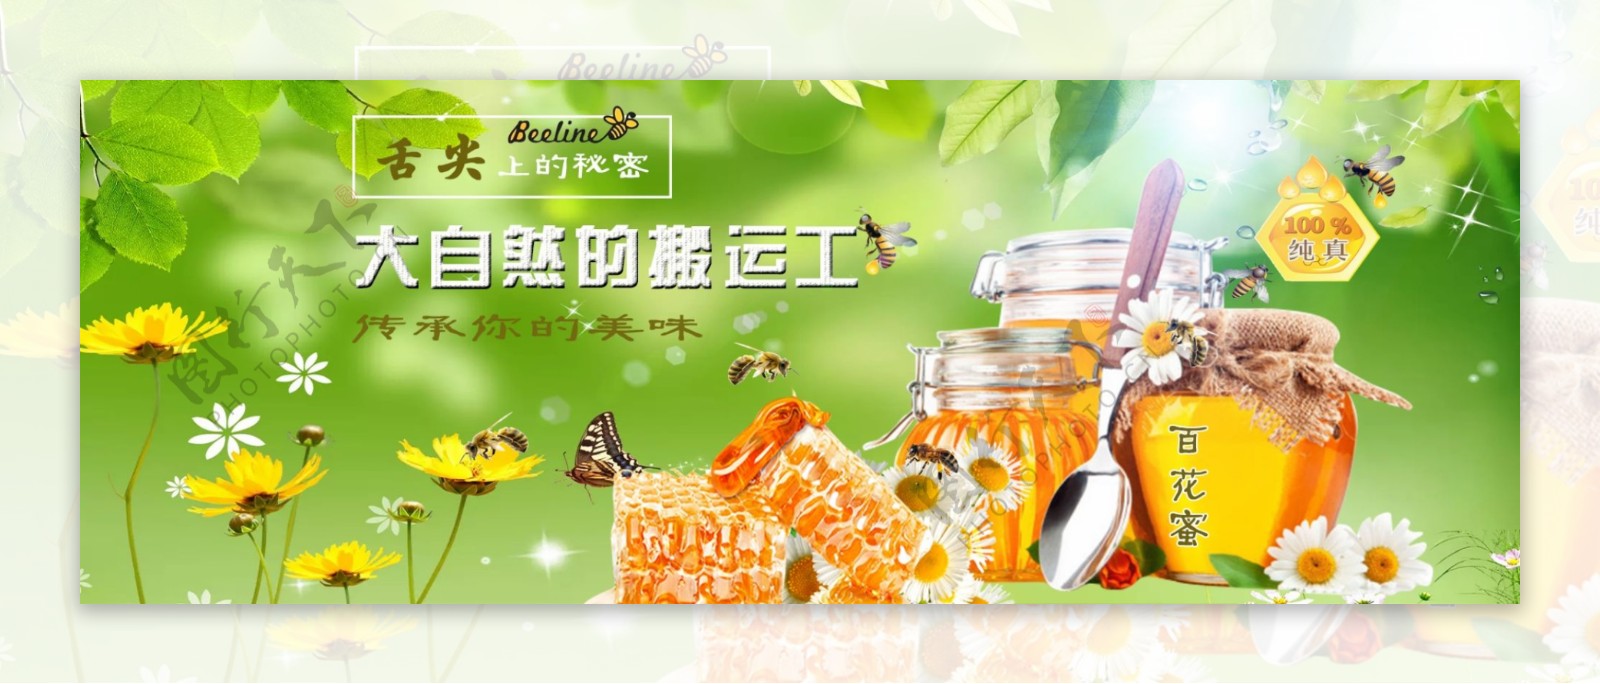 蜂蜜自然网页宣传banner海报